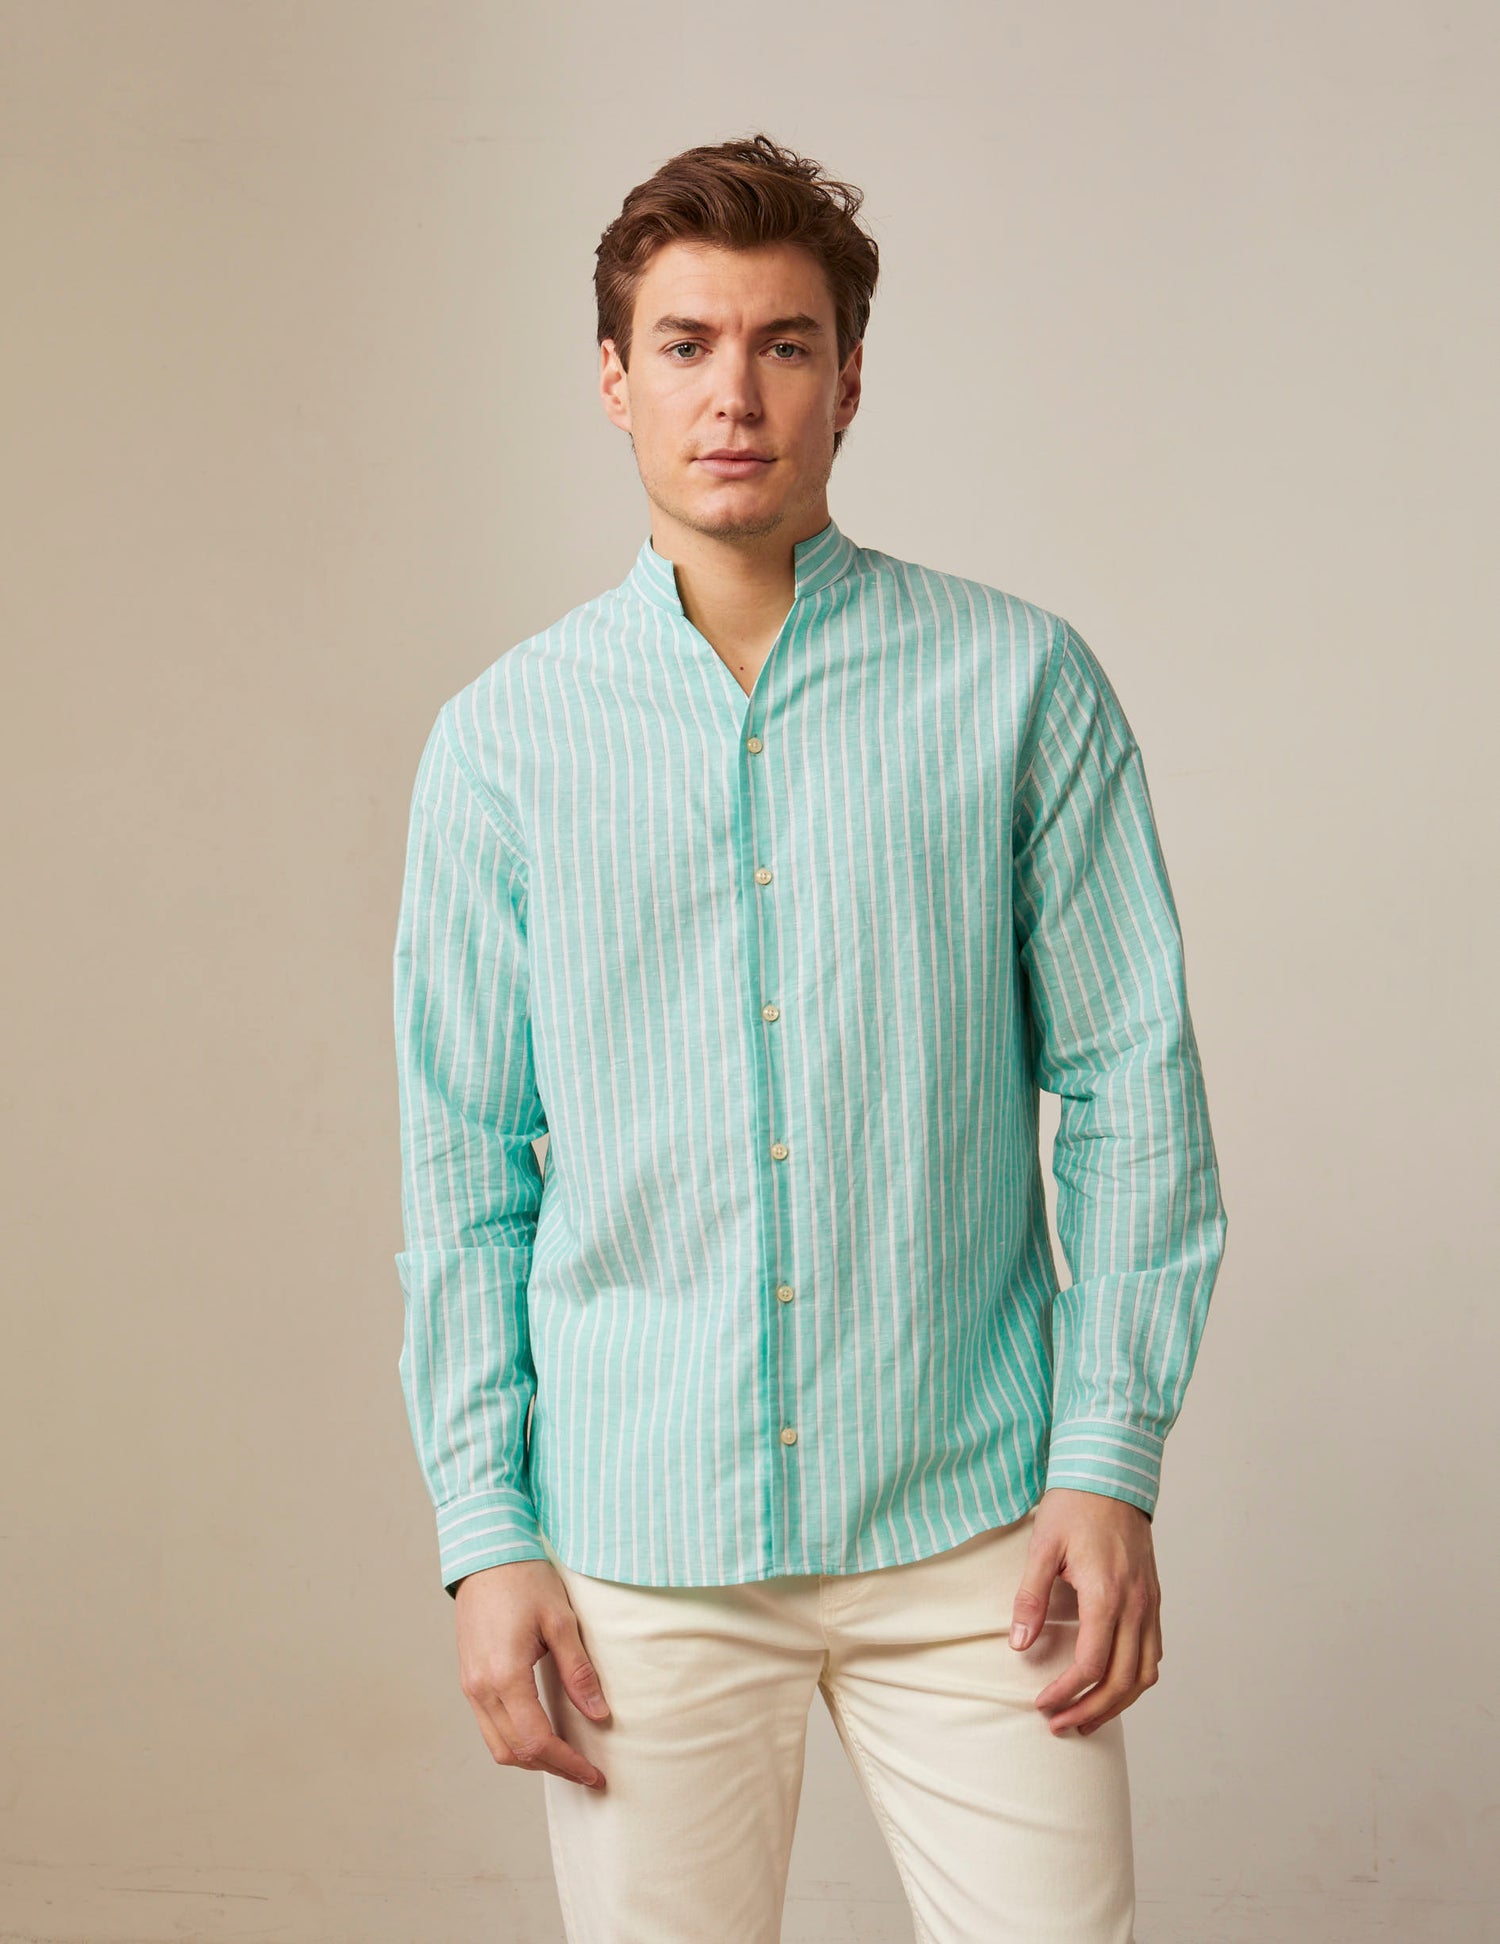 Carl striped shirt in light green linen - Linen - Open straight Collar#3